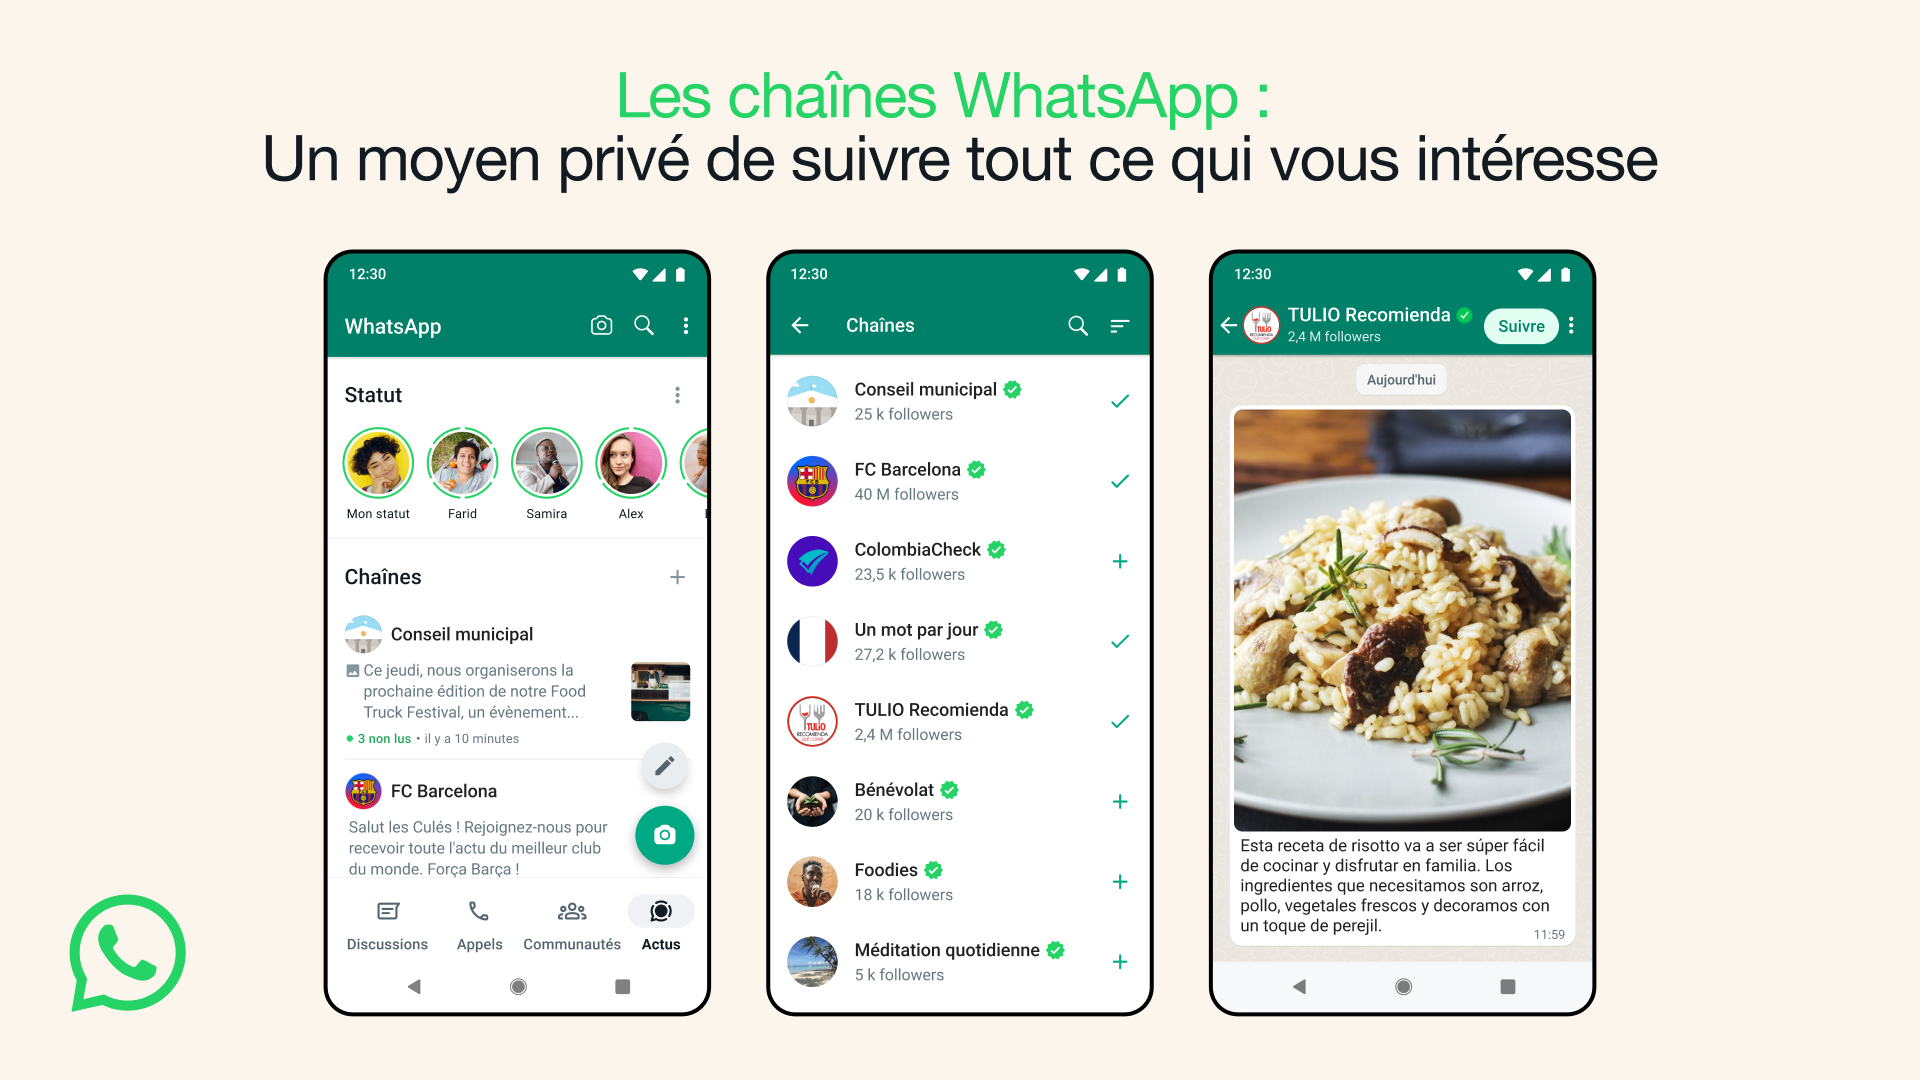 Chaines-Whatsapp-un-moyen-prive-de-suivre-tout-ce-qui-vous-interesse